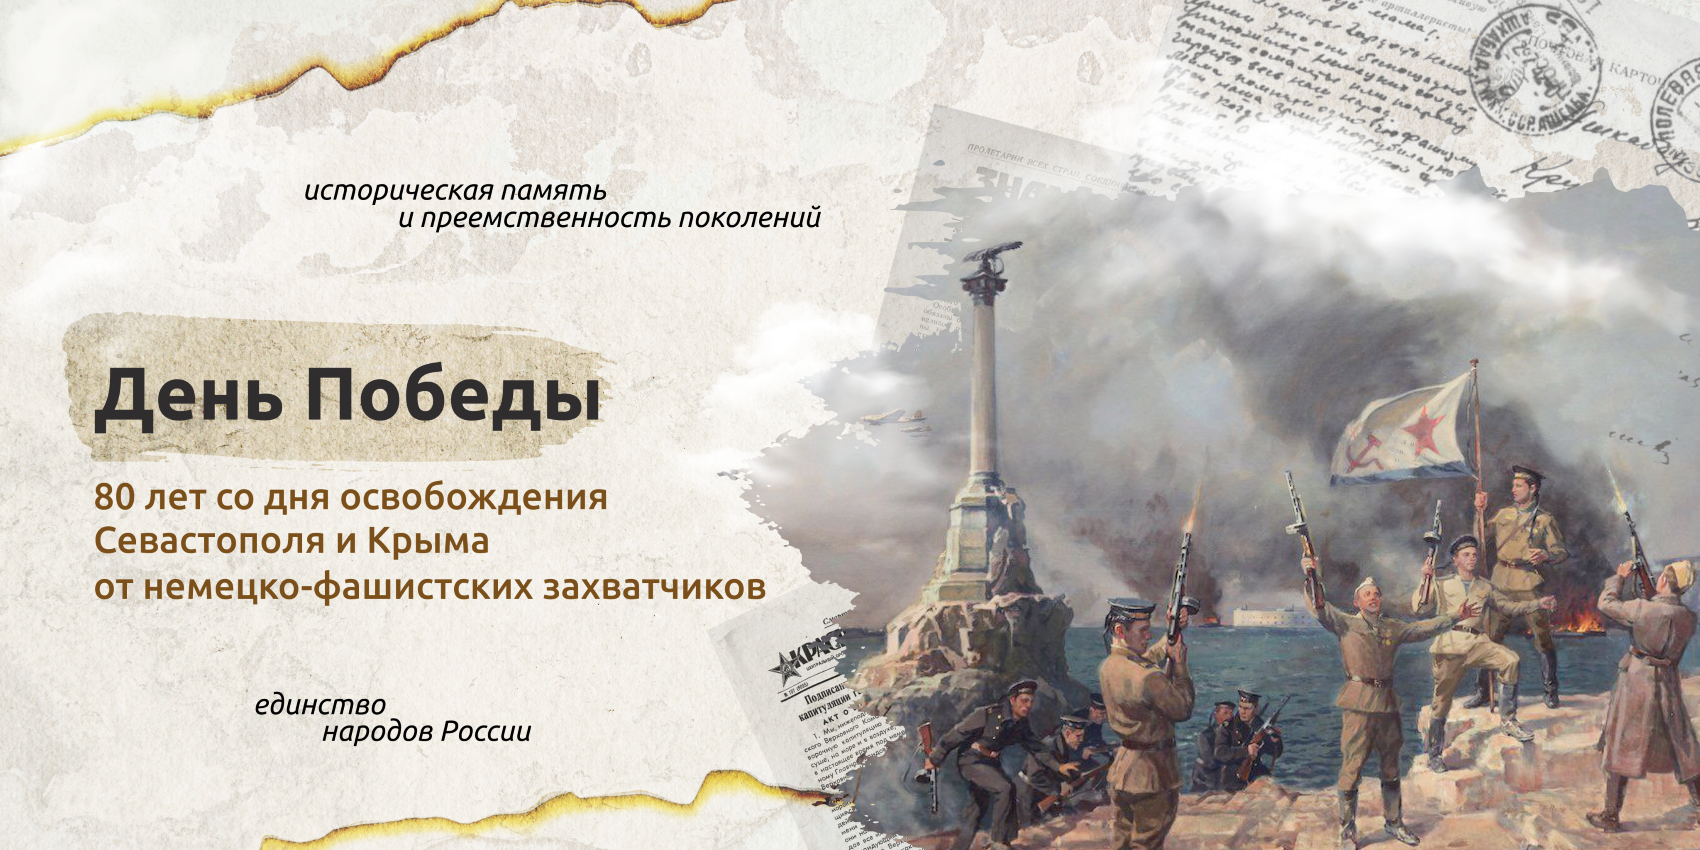 Разговоры о важном_80-летие со дня освобождения Севастополя и Крыма от немецко-фашистских захватчиков.